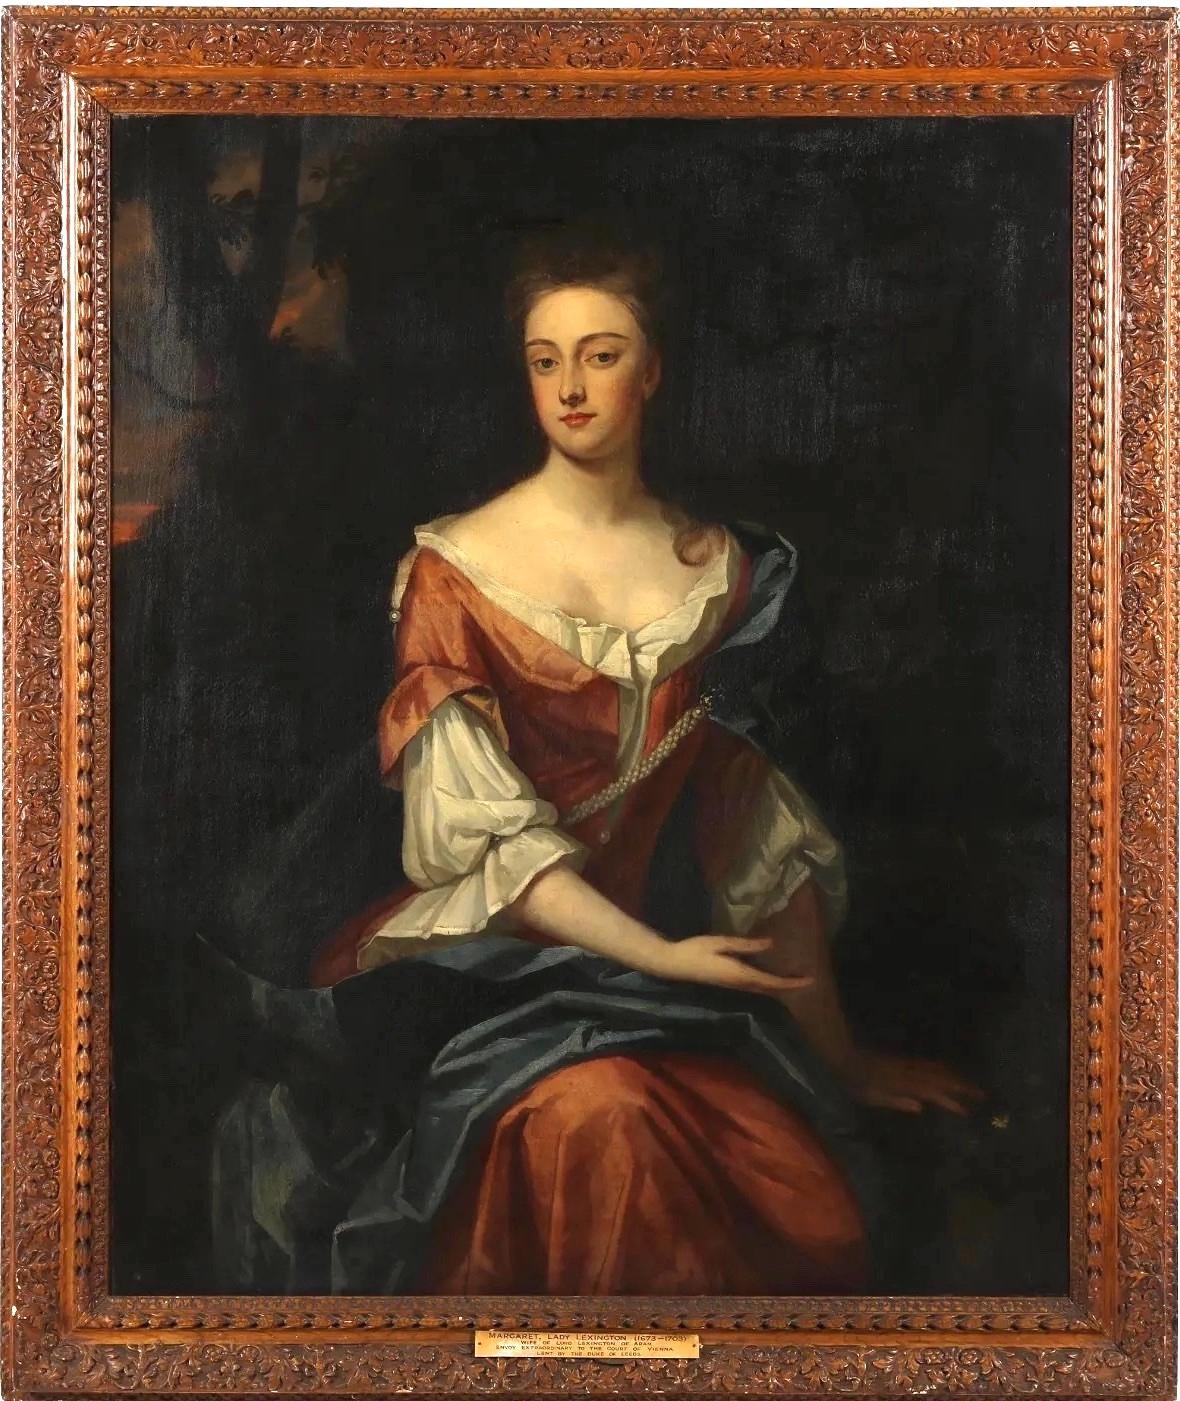 Michael Dahl Portrait Painting - Oil Painting, Portrait by Micheal Dahl studio (1659-1743), Lady Lexington